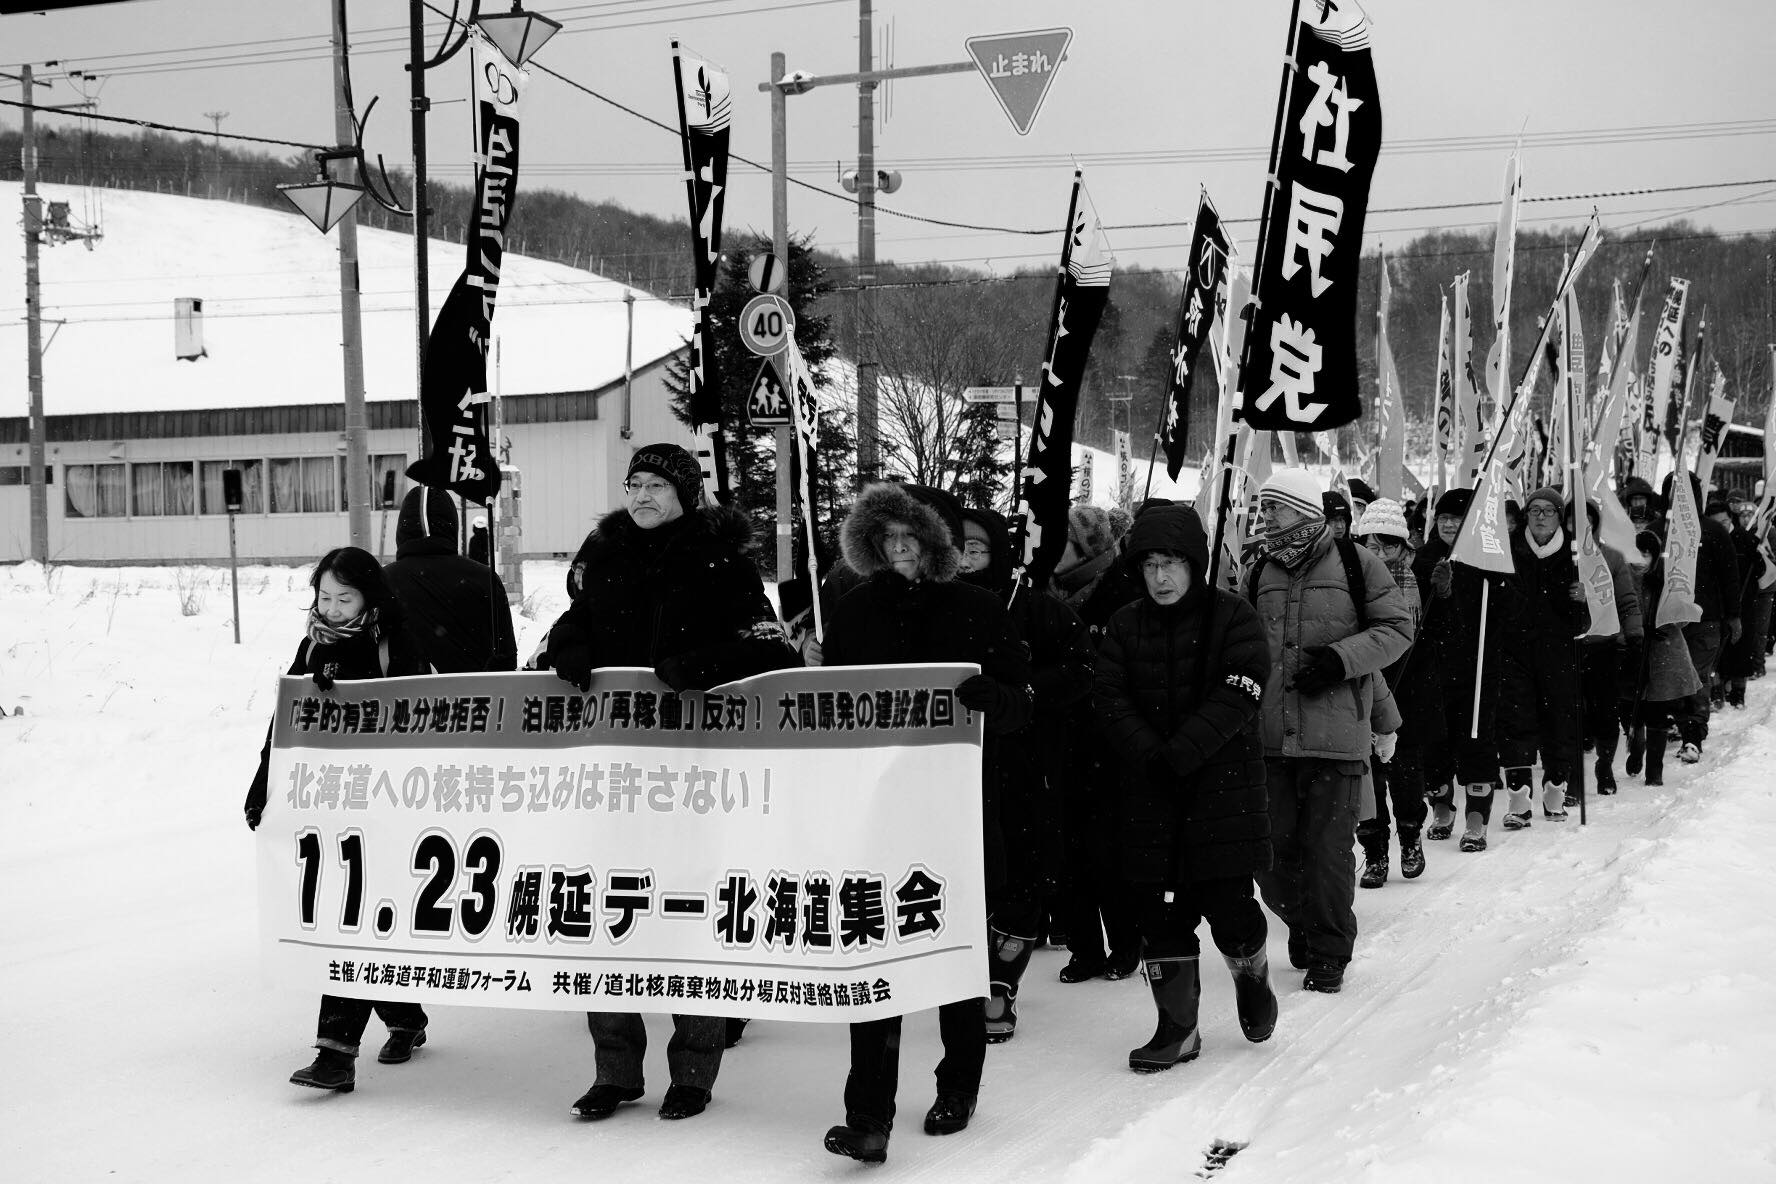 「11.23 幌延デー北海道集会」が開催されます。